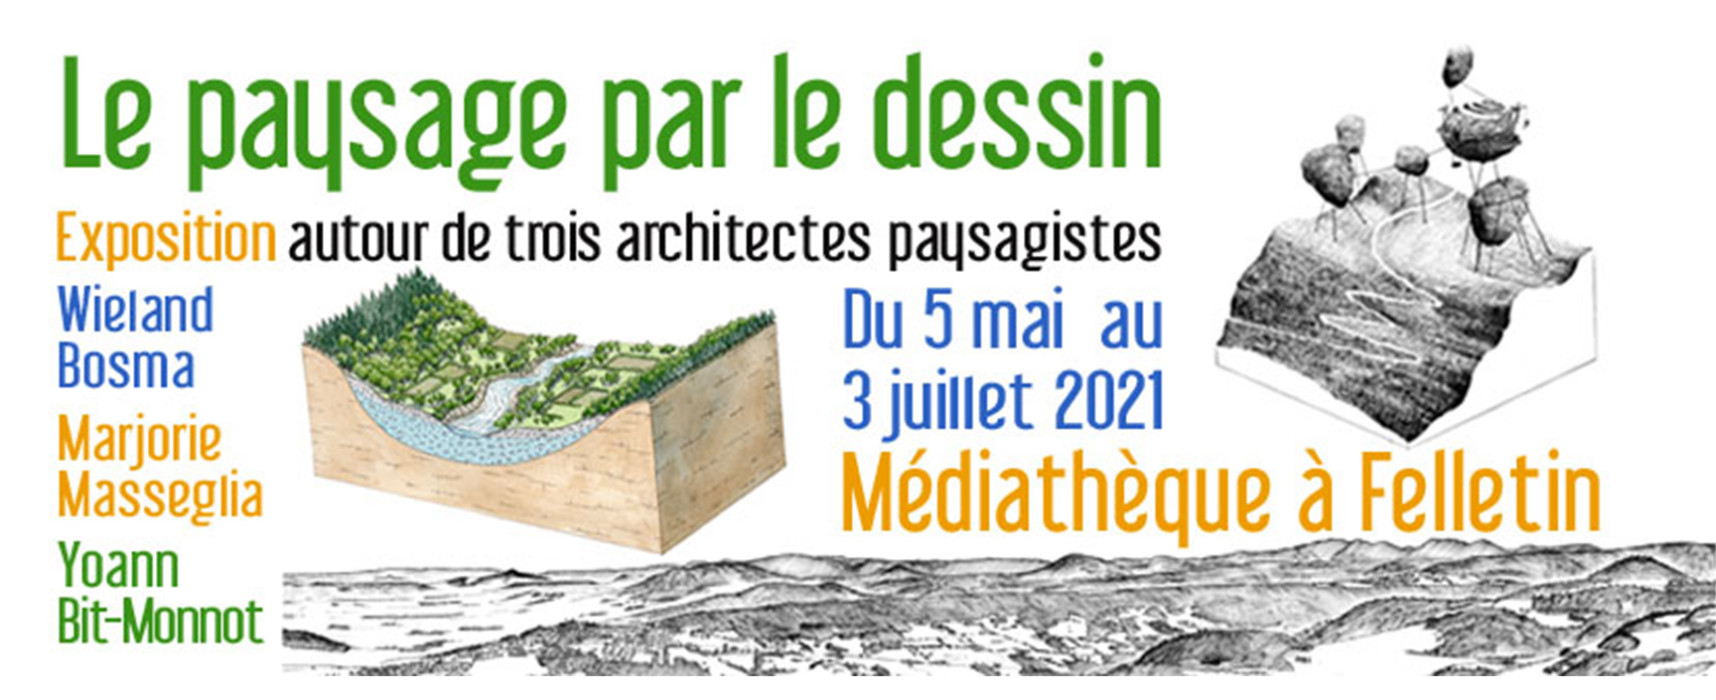 [Exposition] « Le paysage par le dessin » du 5 mai au 3 juillet 2021 à la médiathèque #Felletin